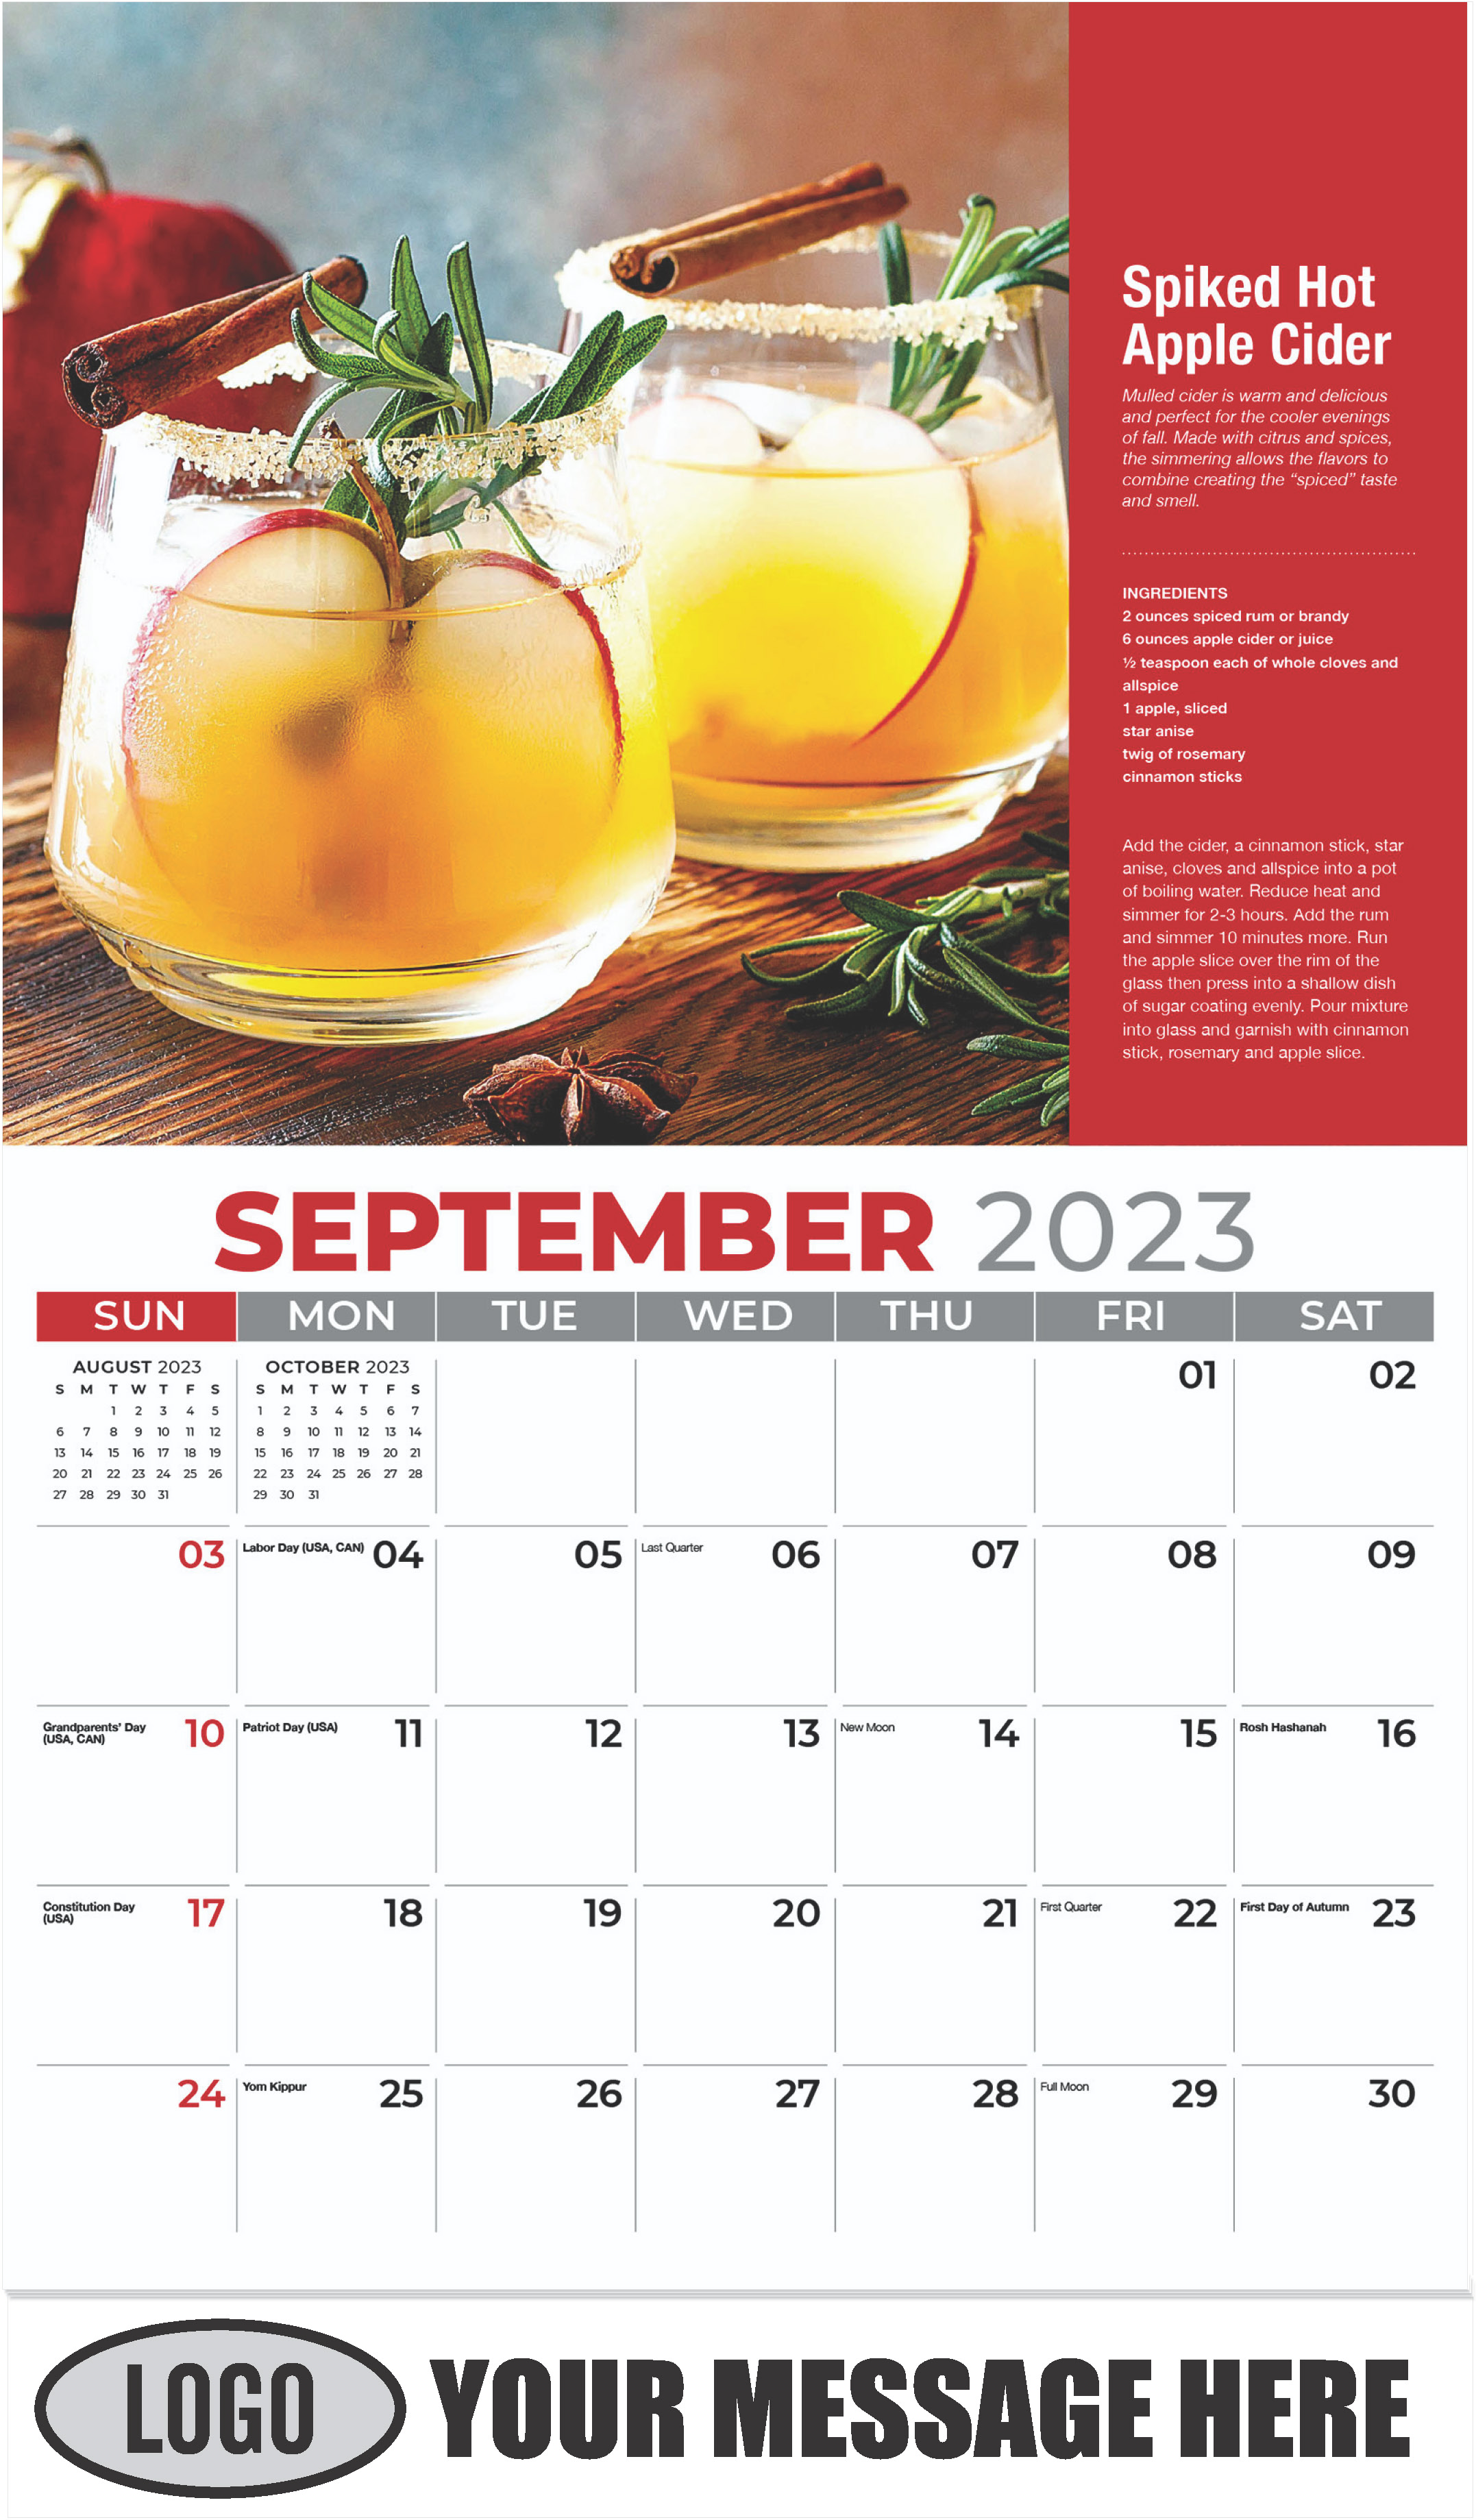 Spiked Hot Apple Cider - September - Happy Hour Cocktails 2023 Promotional Calendar